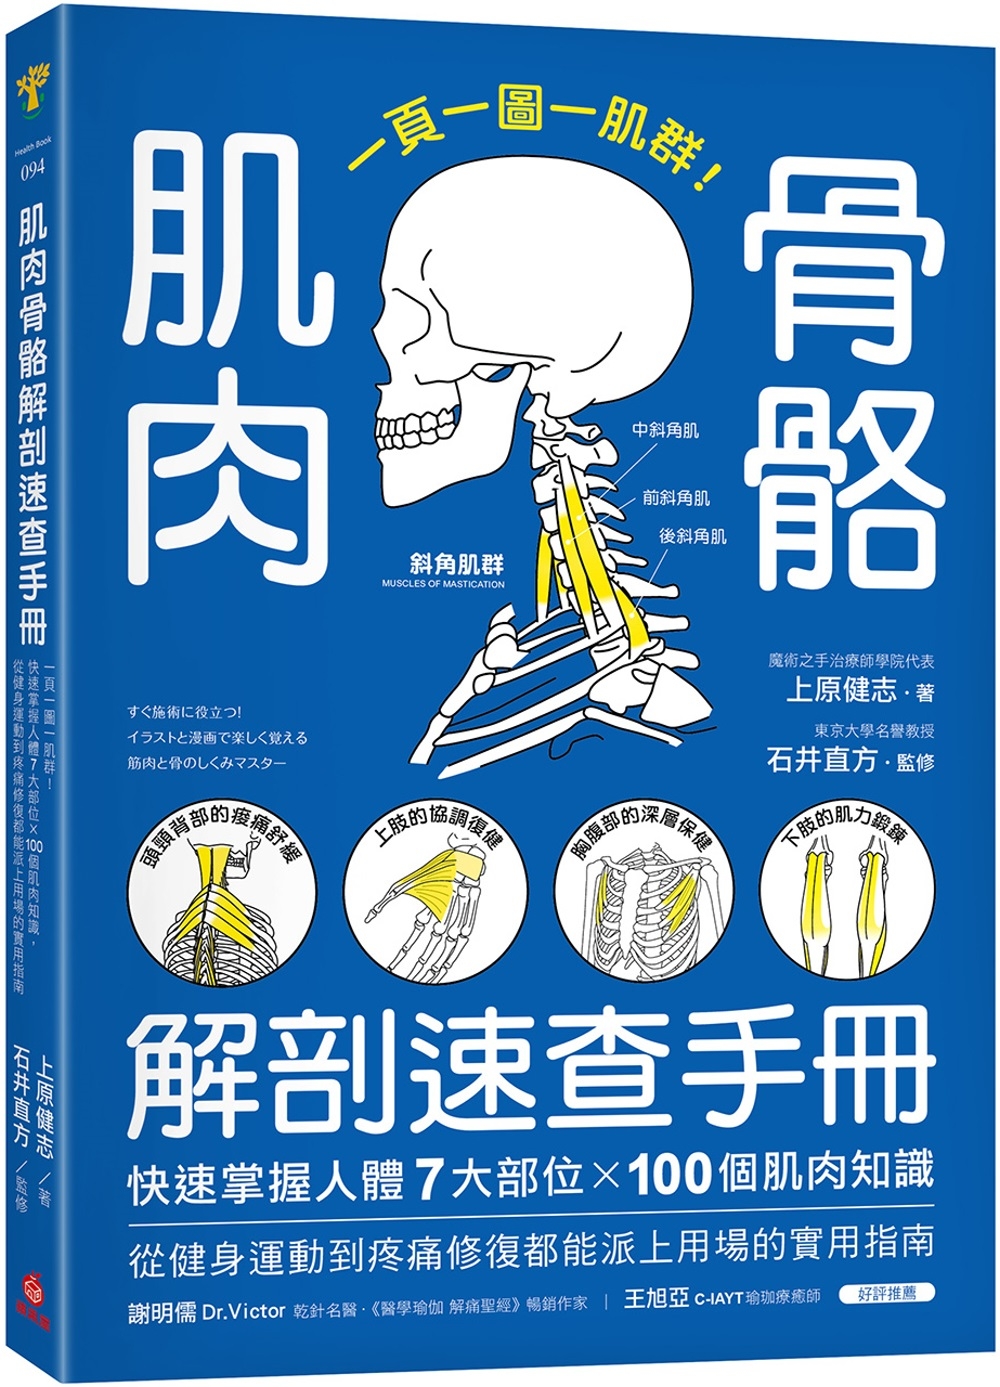 现货  肌肉骨骼解剖速查手册：一页一图一肌群！快速掌握人体7大部位x100个肌肉知识，从健身运动到疼痛修复都能派上用场